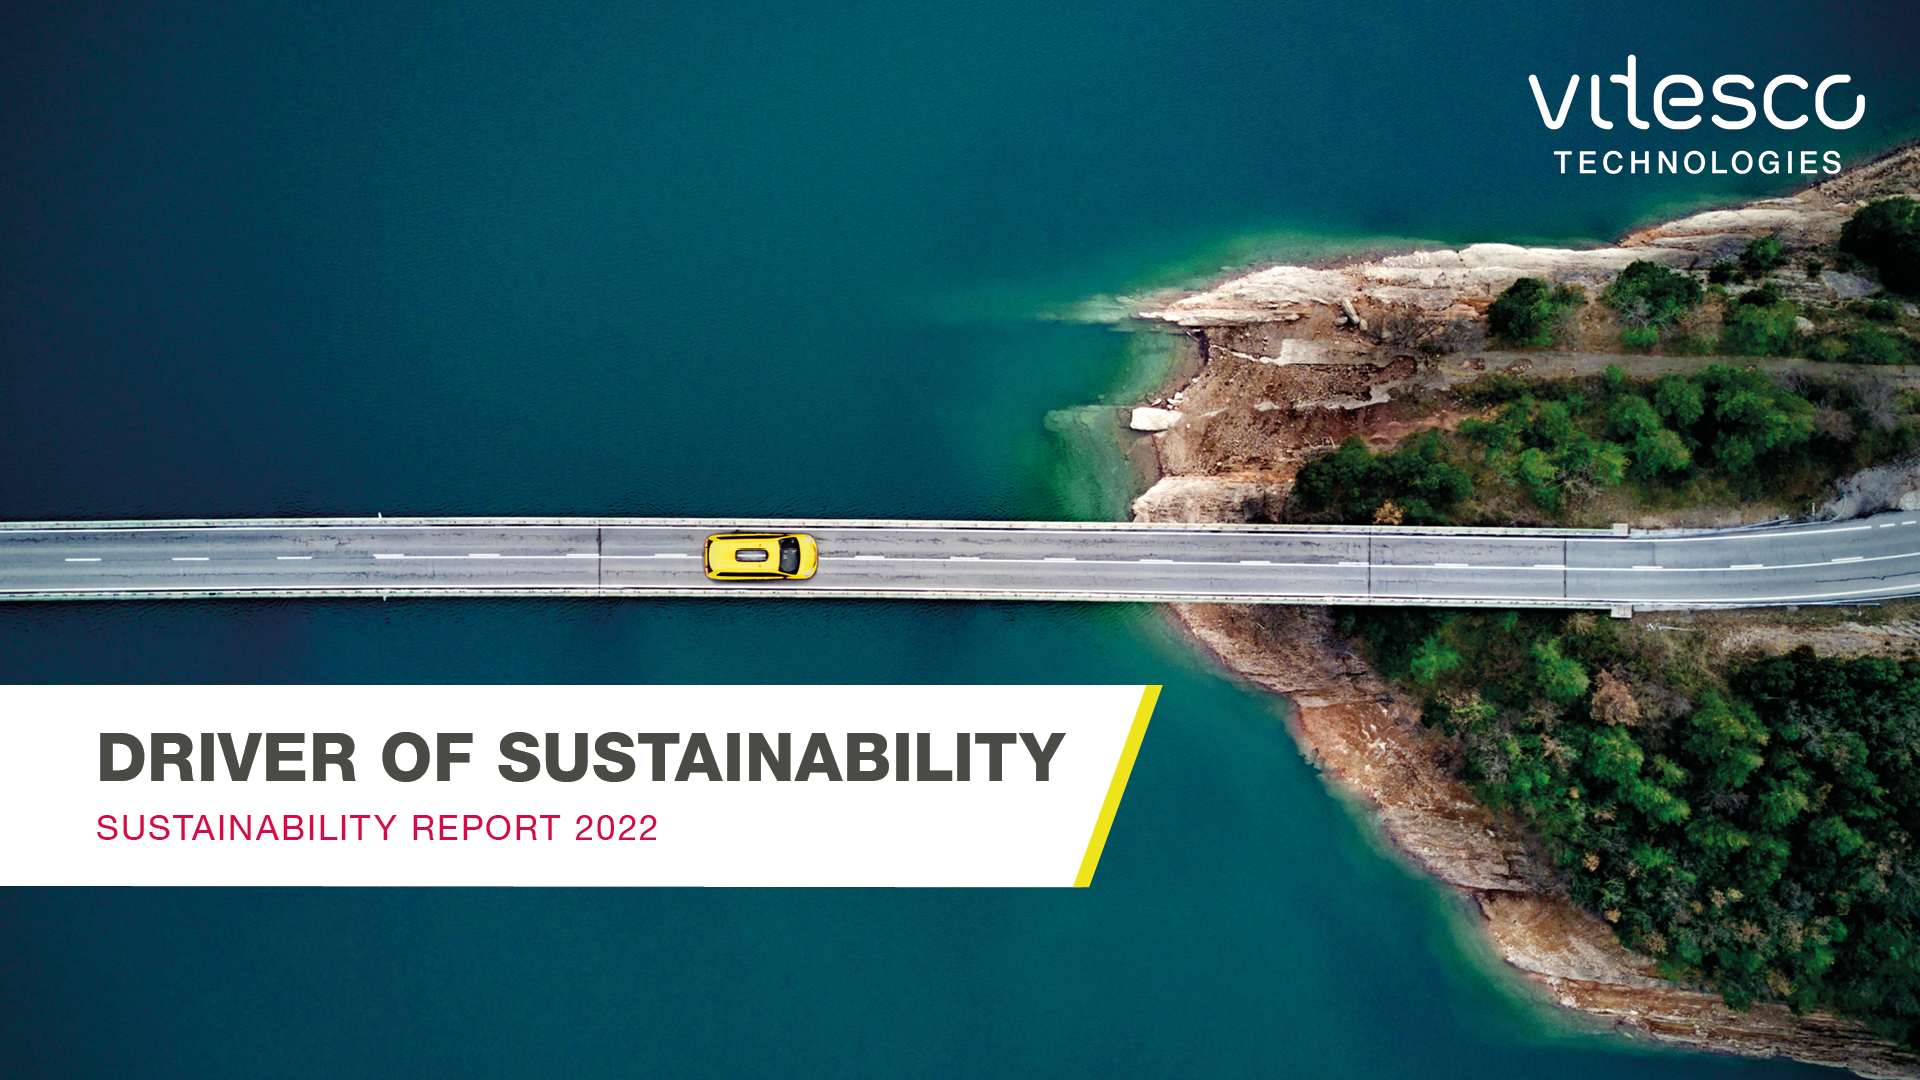 Vitesco Technologies veröffentlicht Nachhaltigkeitsbericht für das Geschäftsjahr 2022